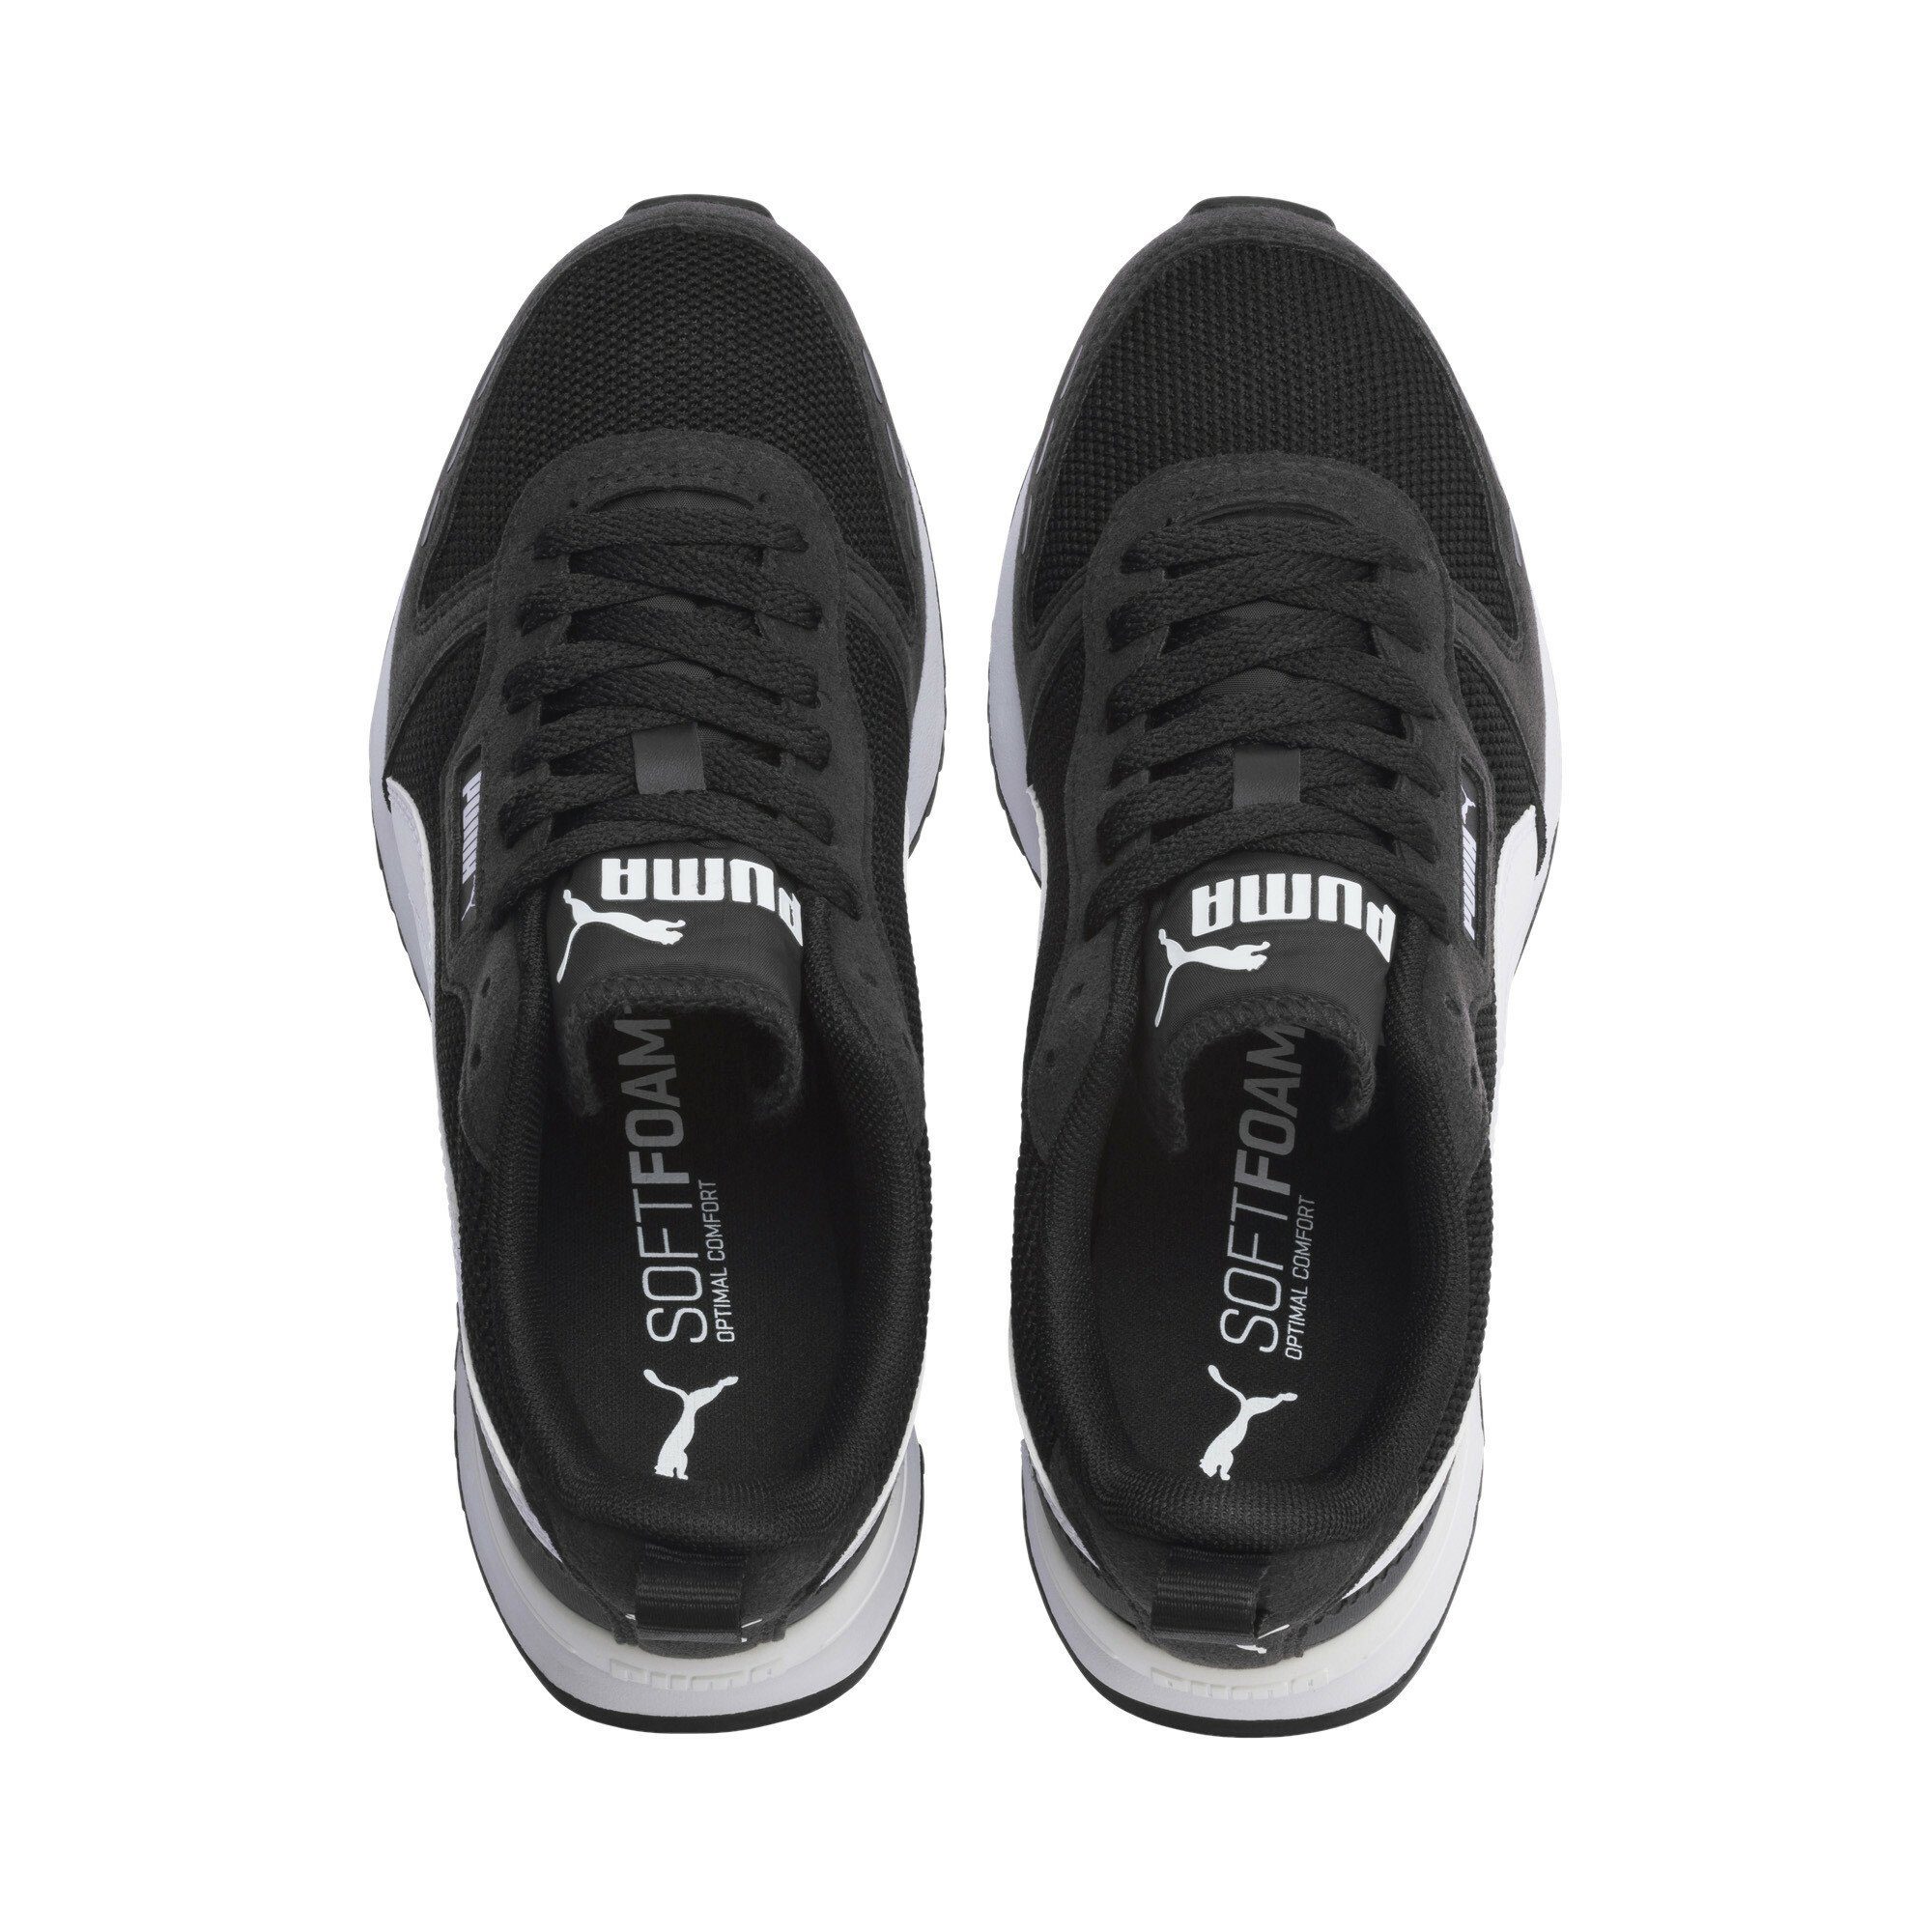 PUMA R78 White Black Laufschuh Jugendliche Sneakers